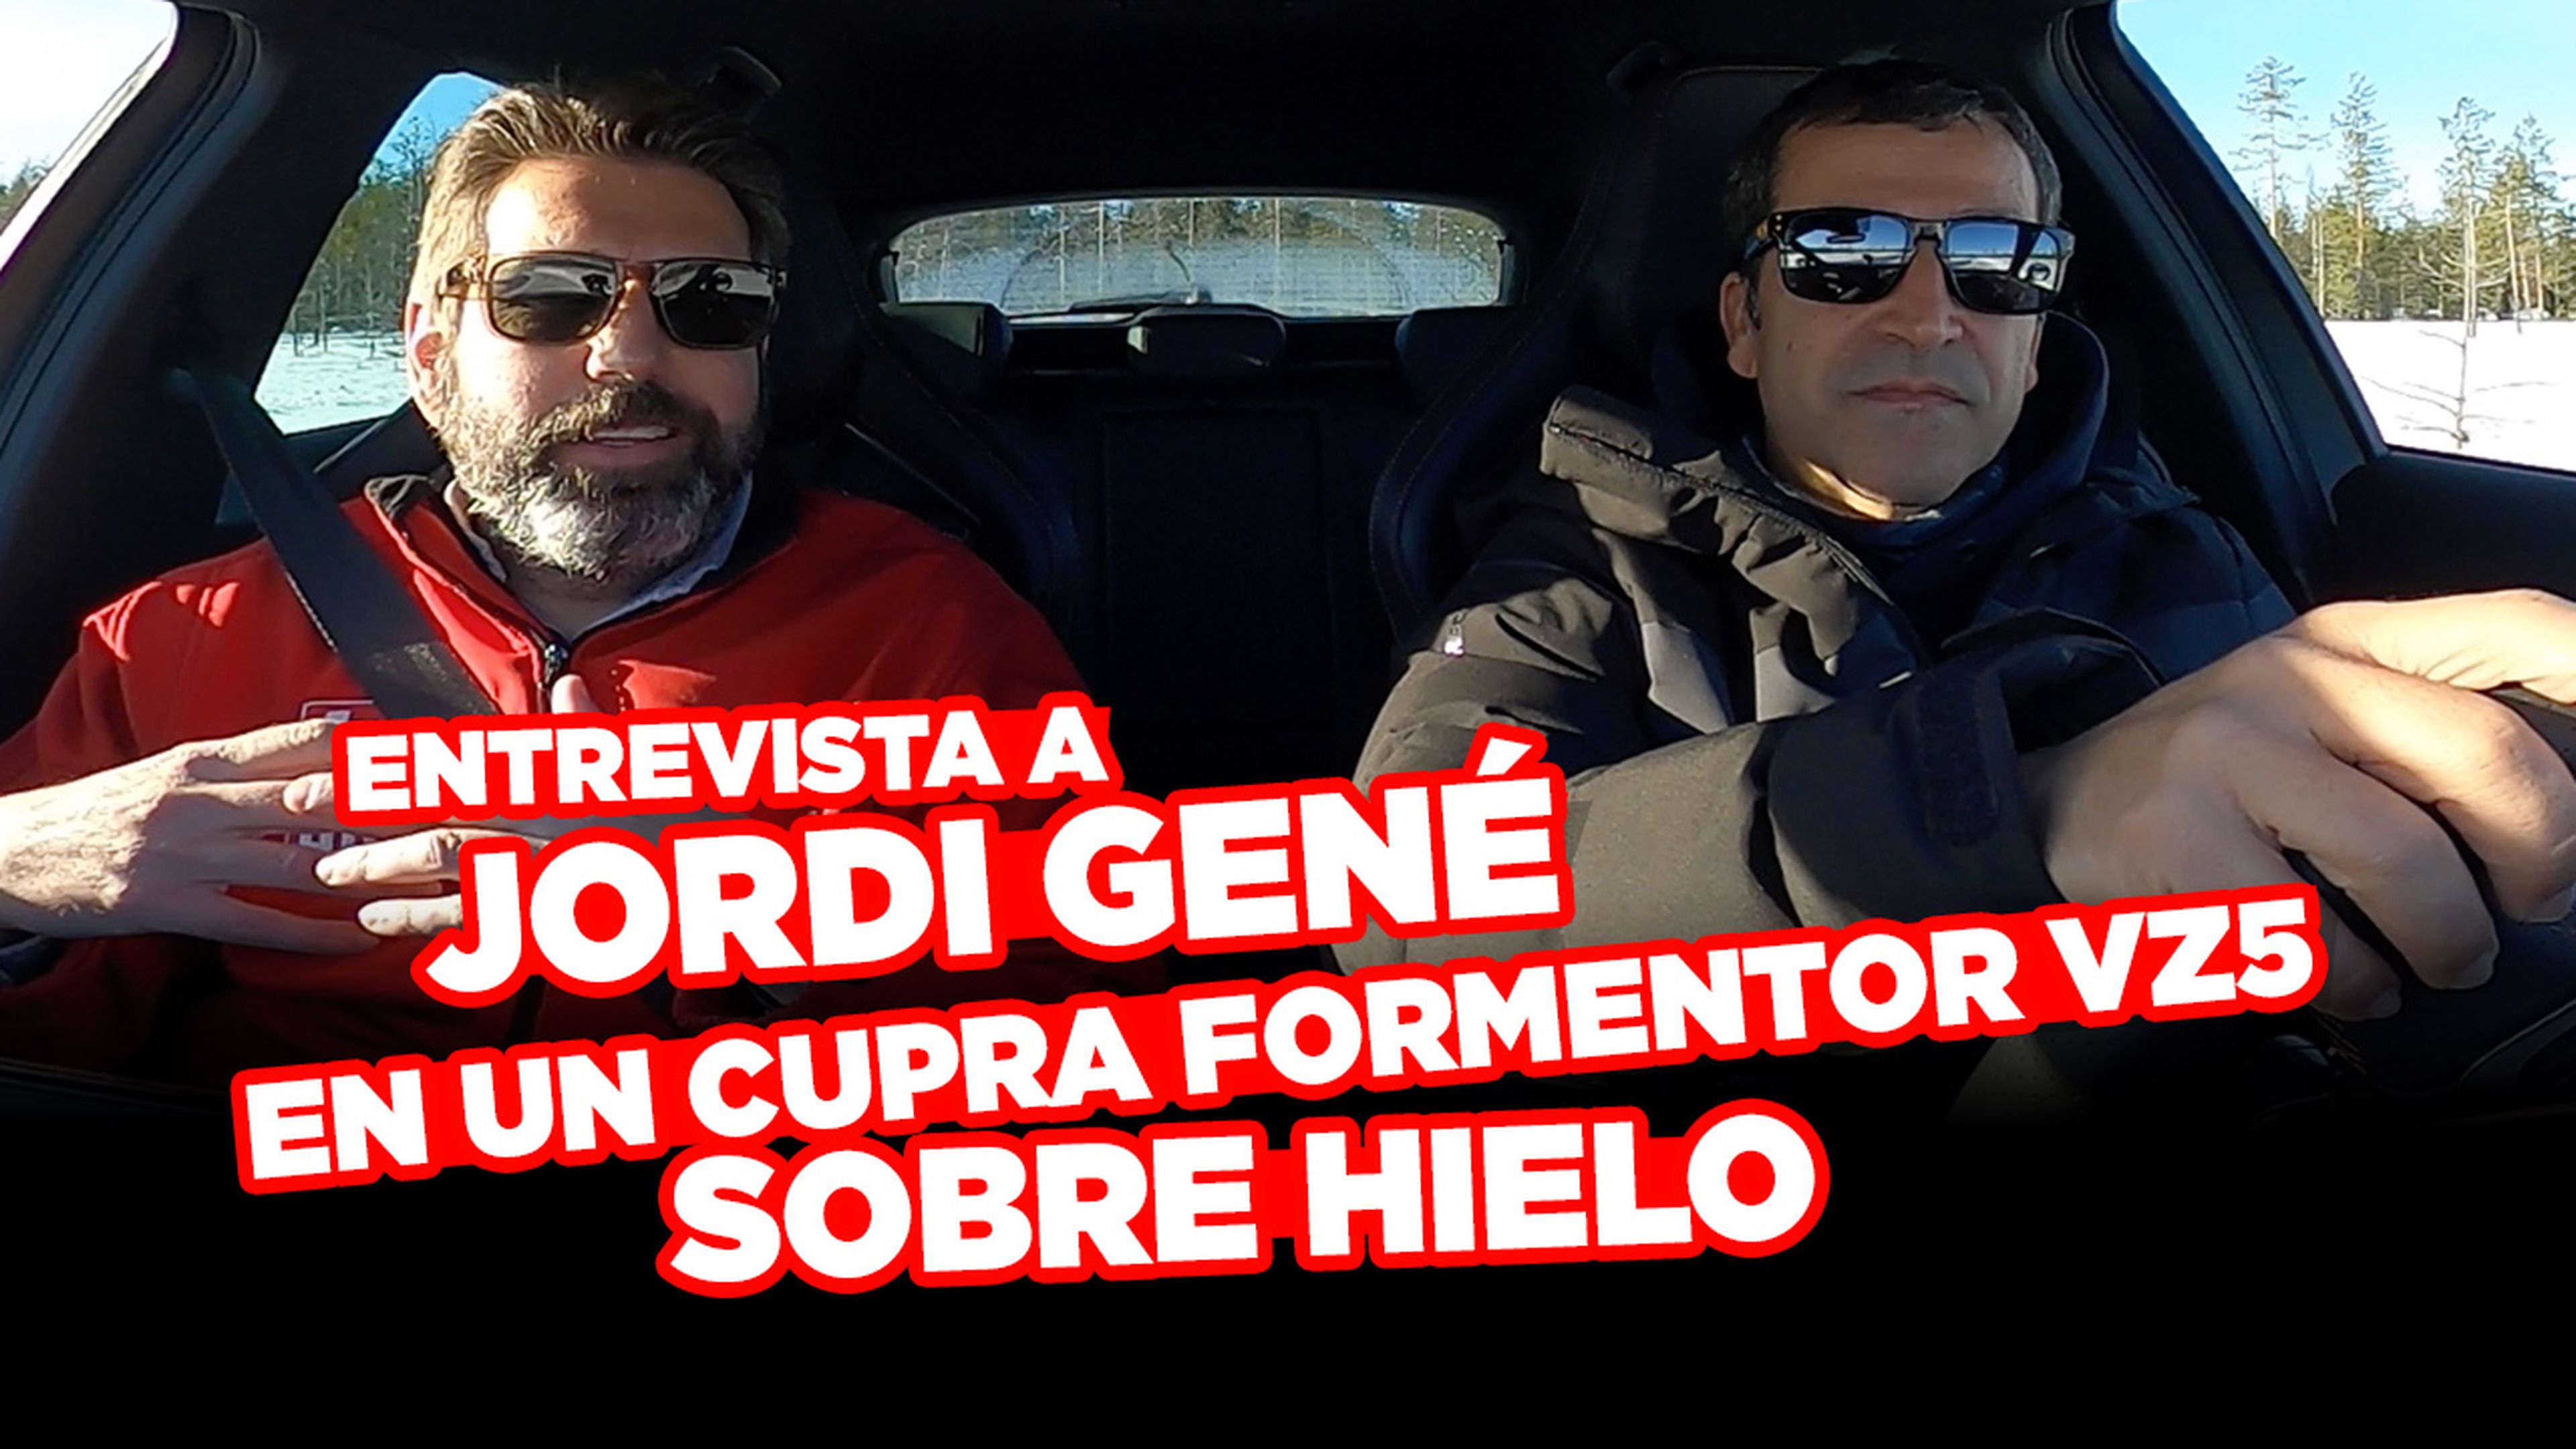 VÍDEO: Entrevista a Jordi Gené al volante de un Cupra Formentor VZ5